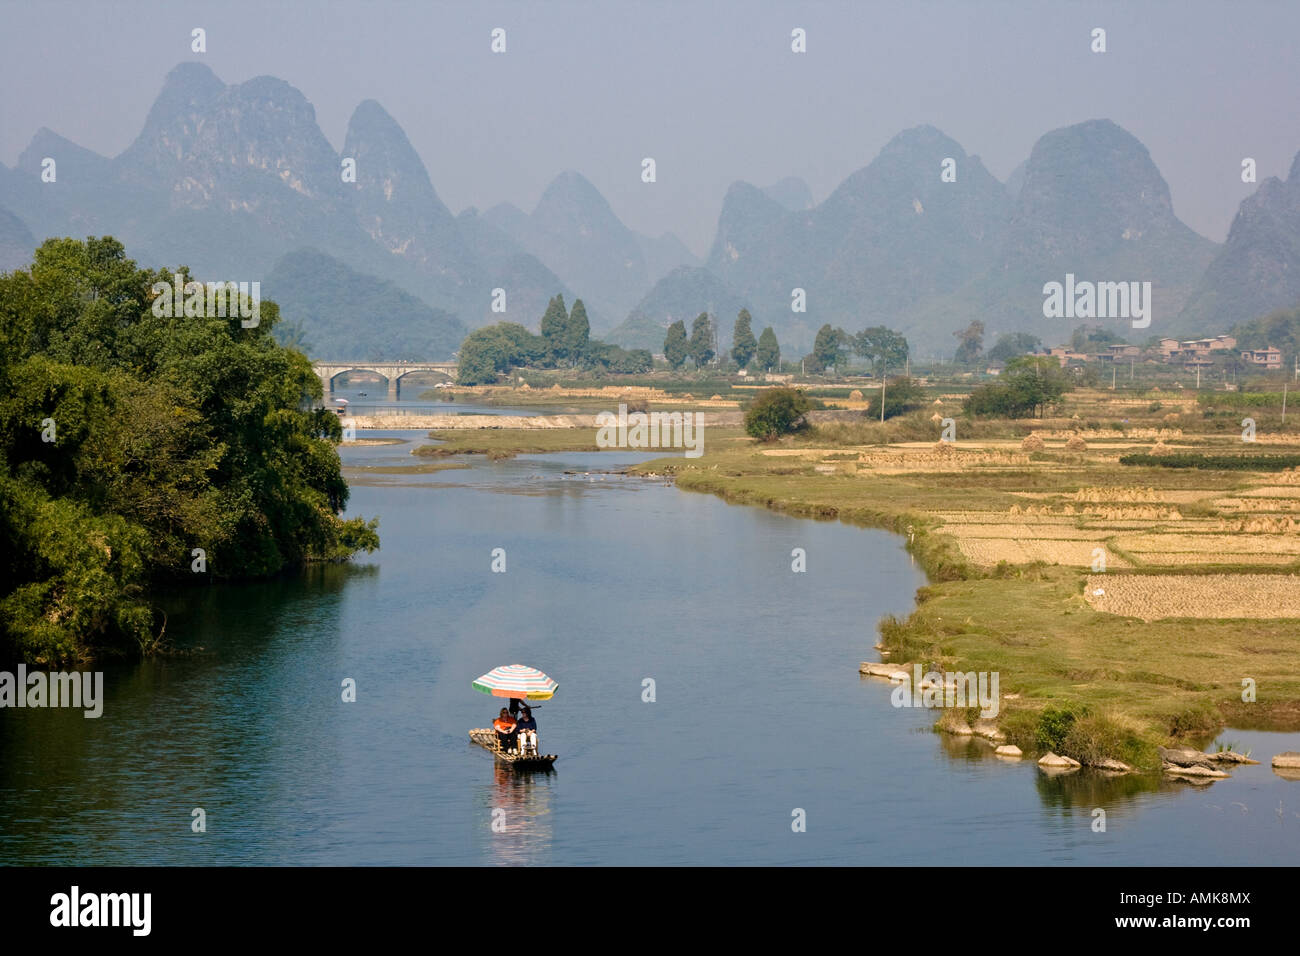 Les touristes du rafting sur des radeaux de bambou Rafting sur la rivière Yangshuo Chine Banque D'Images